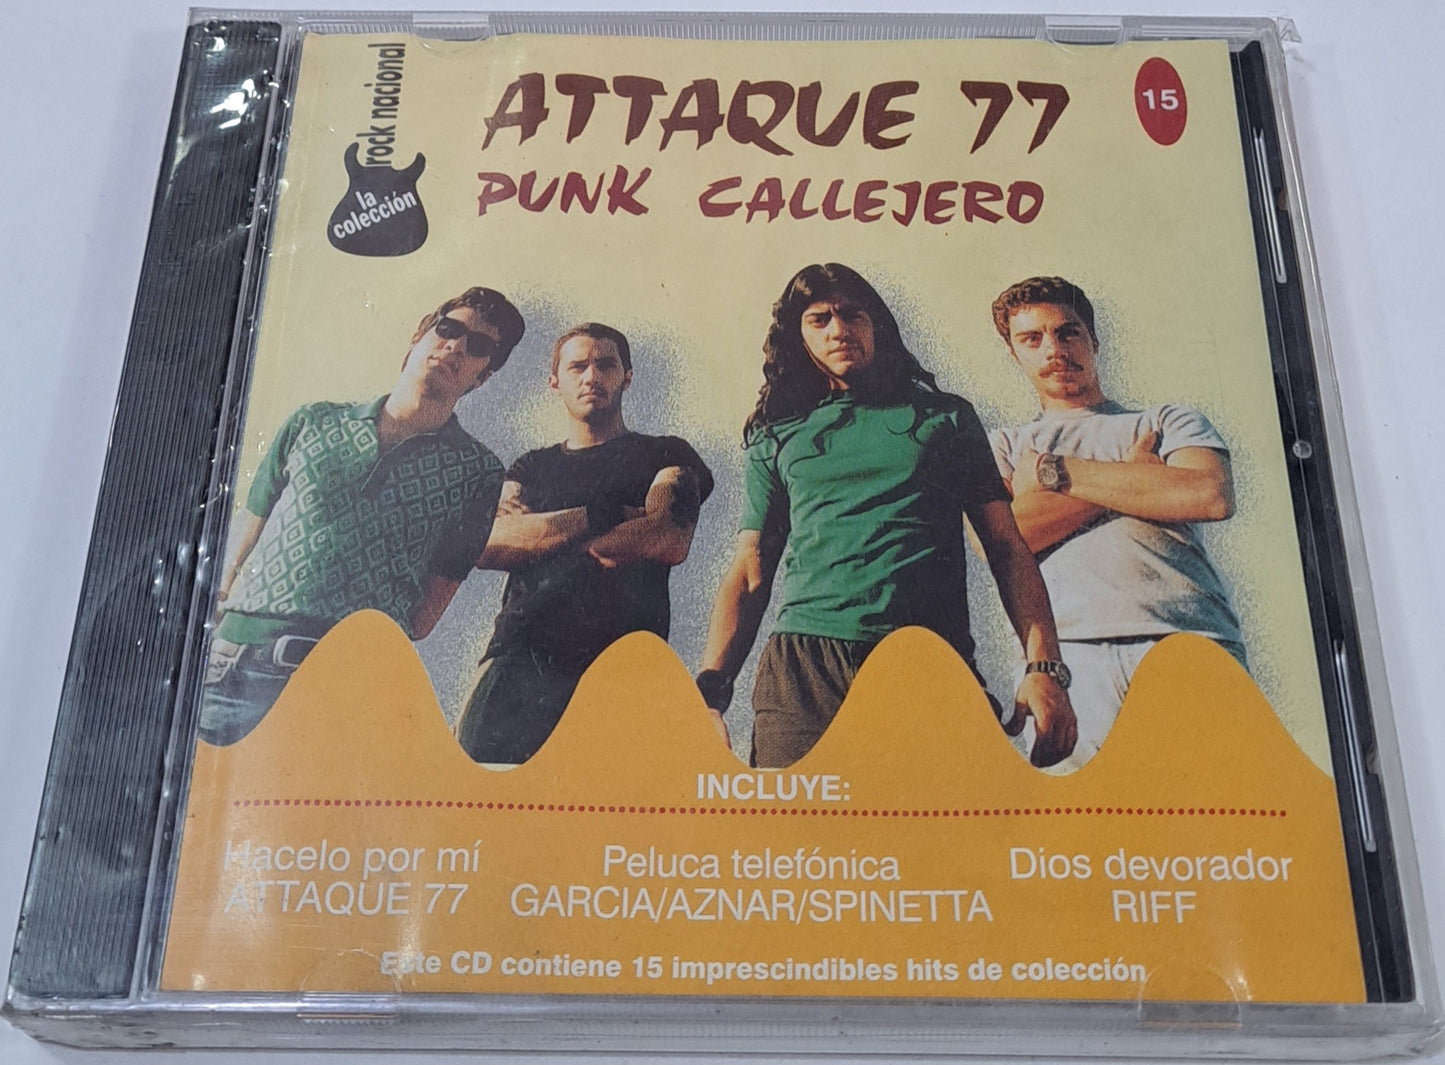 ATTAQUE 77 - PUNK CALLEJERO CD